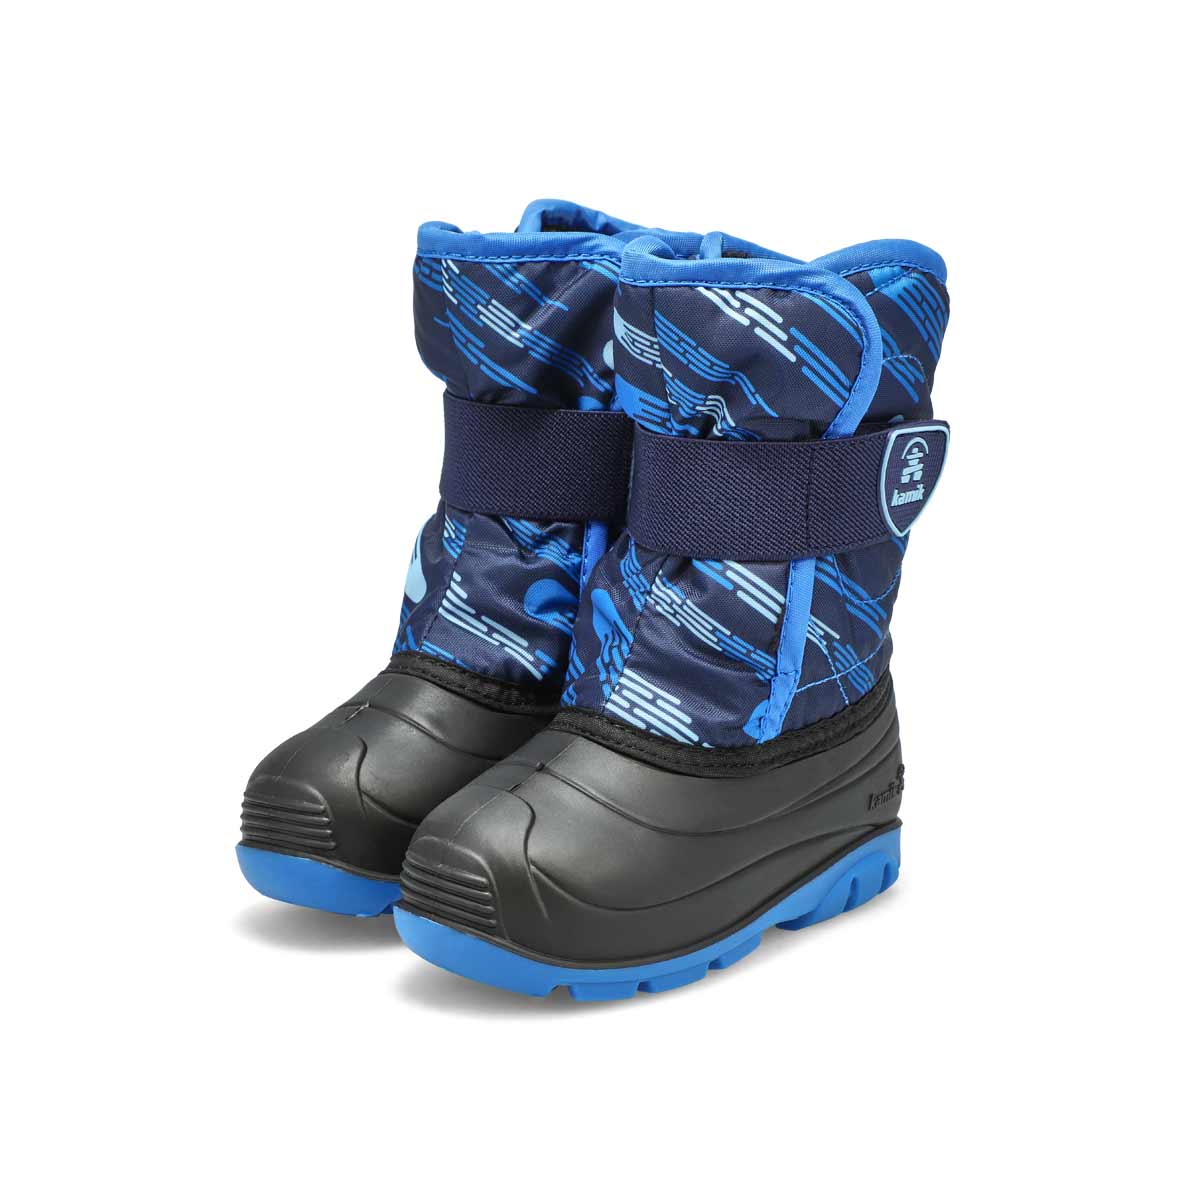 Infants' Snowbug4 Waterproof Winter Boot - Navy